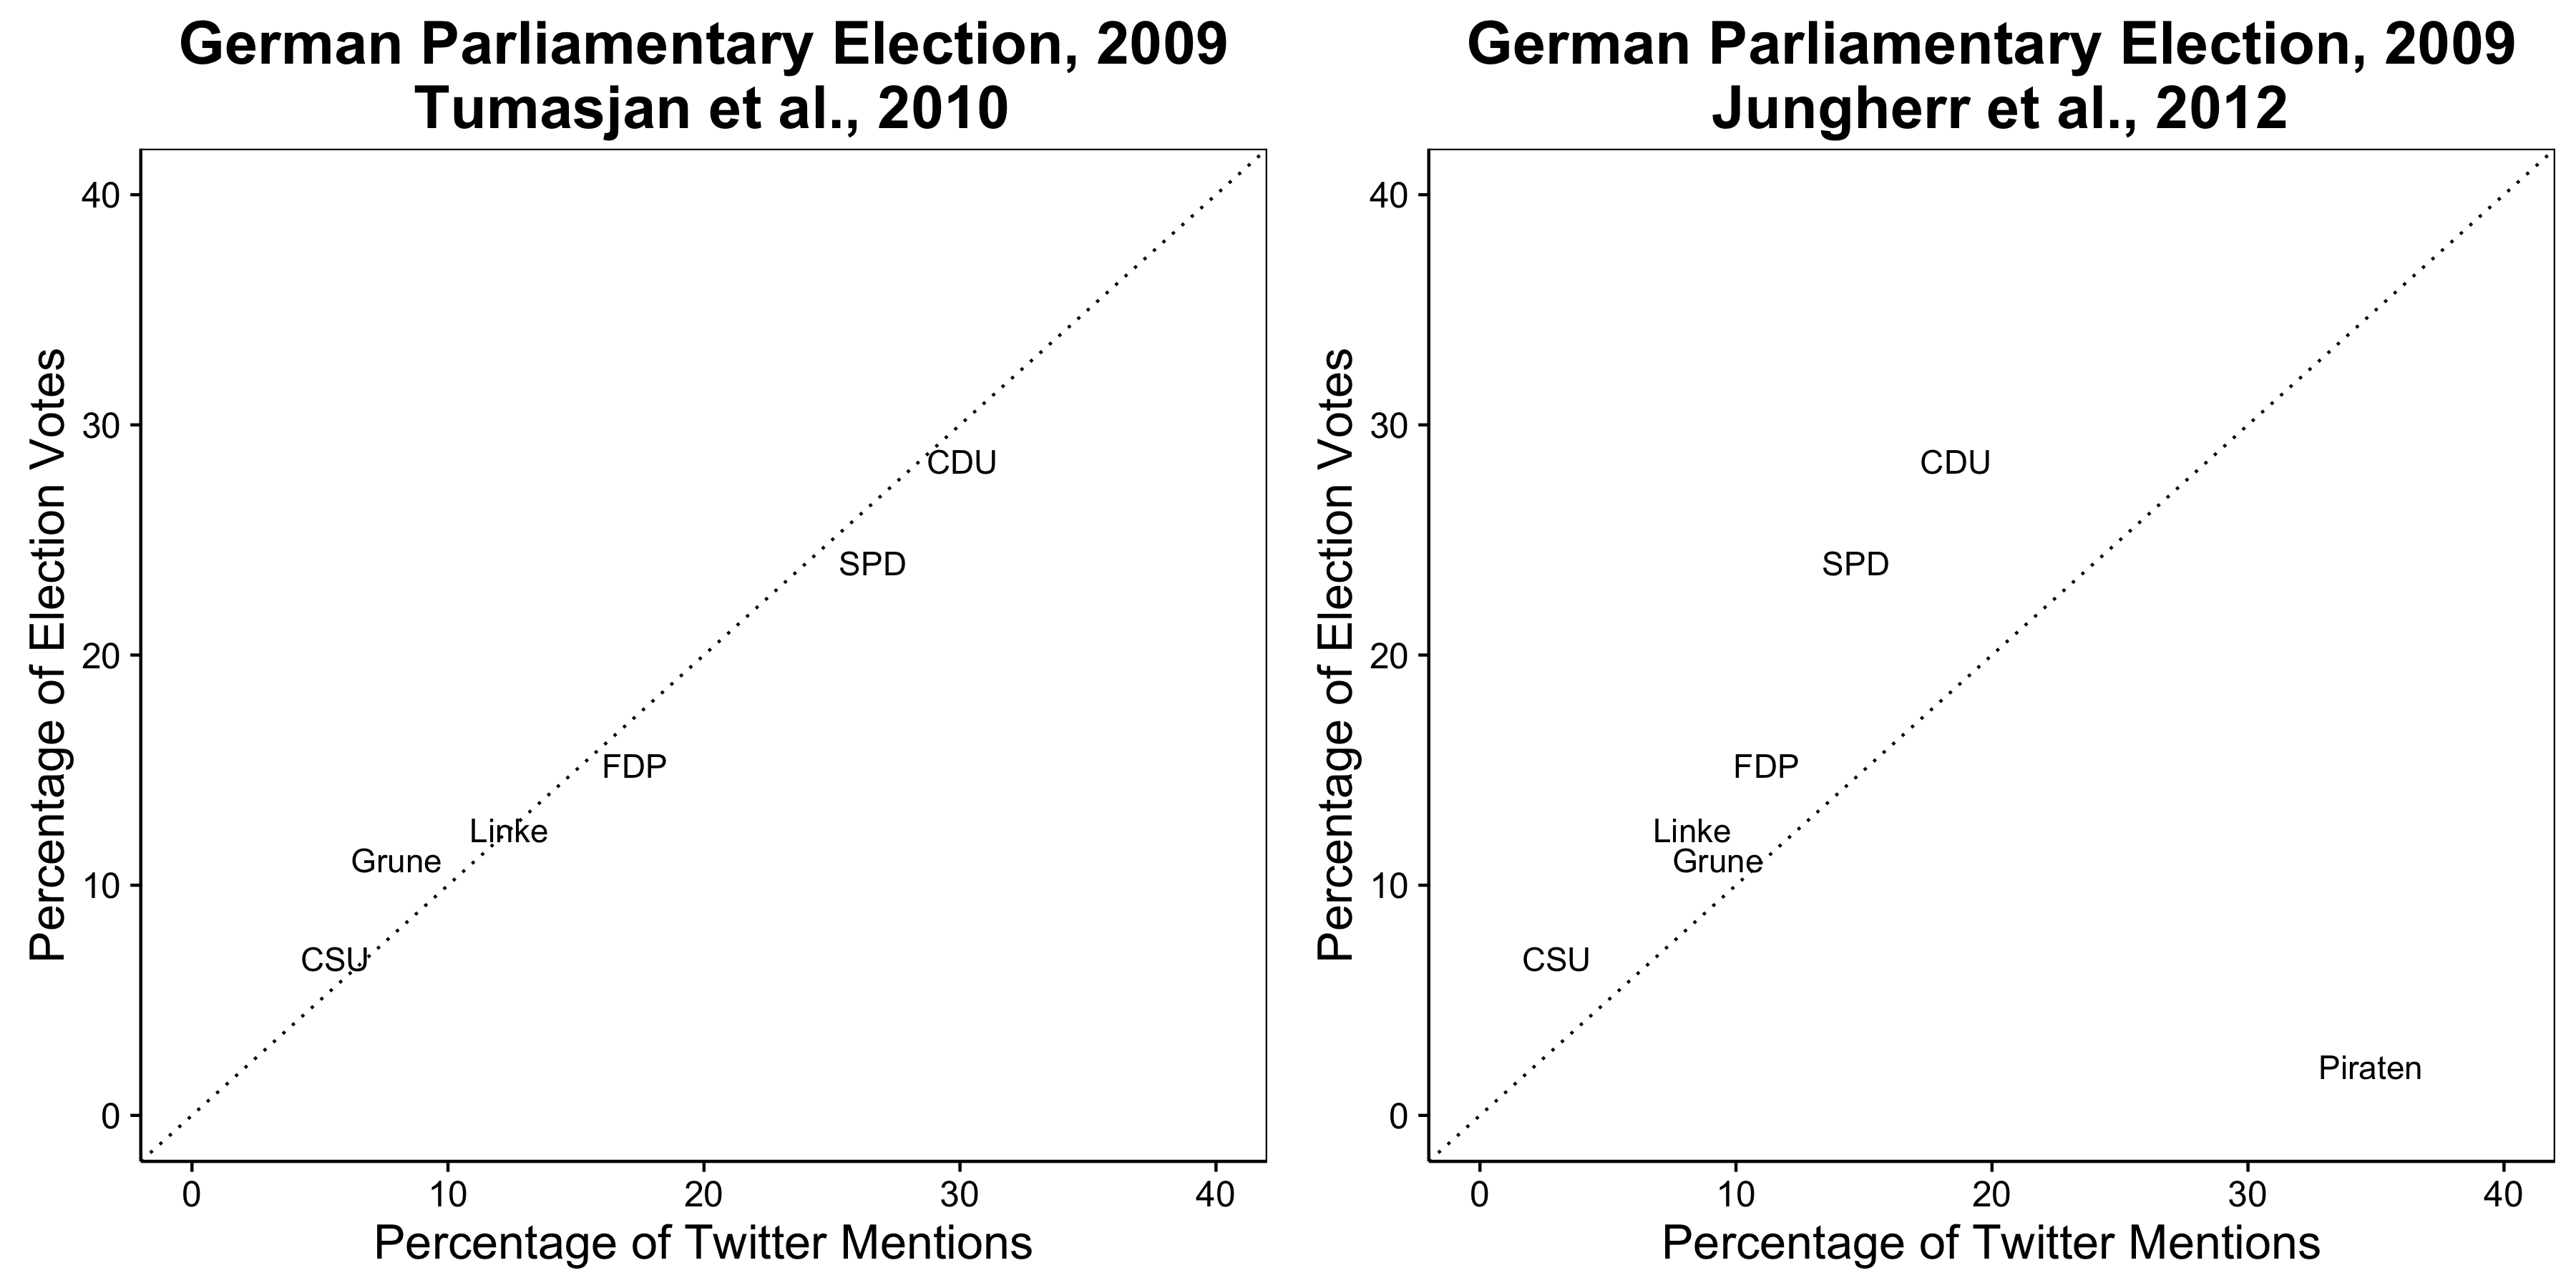 Figur 2,9: Twitter schreift schéngen d'Resultater vun de 2009 Däitsch Walen ze soe (Tumasjan et al 2010.), Mee dat Resultat vläit op eng arbiträr an ongerechtfäerdegt Choixen ze hänken (Jungherr, Jürgens, an Schoen 2012).